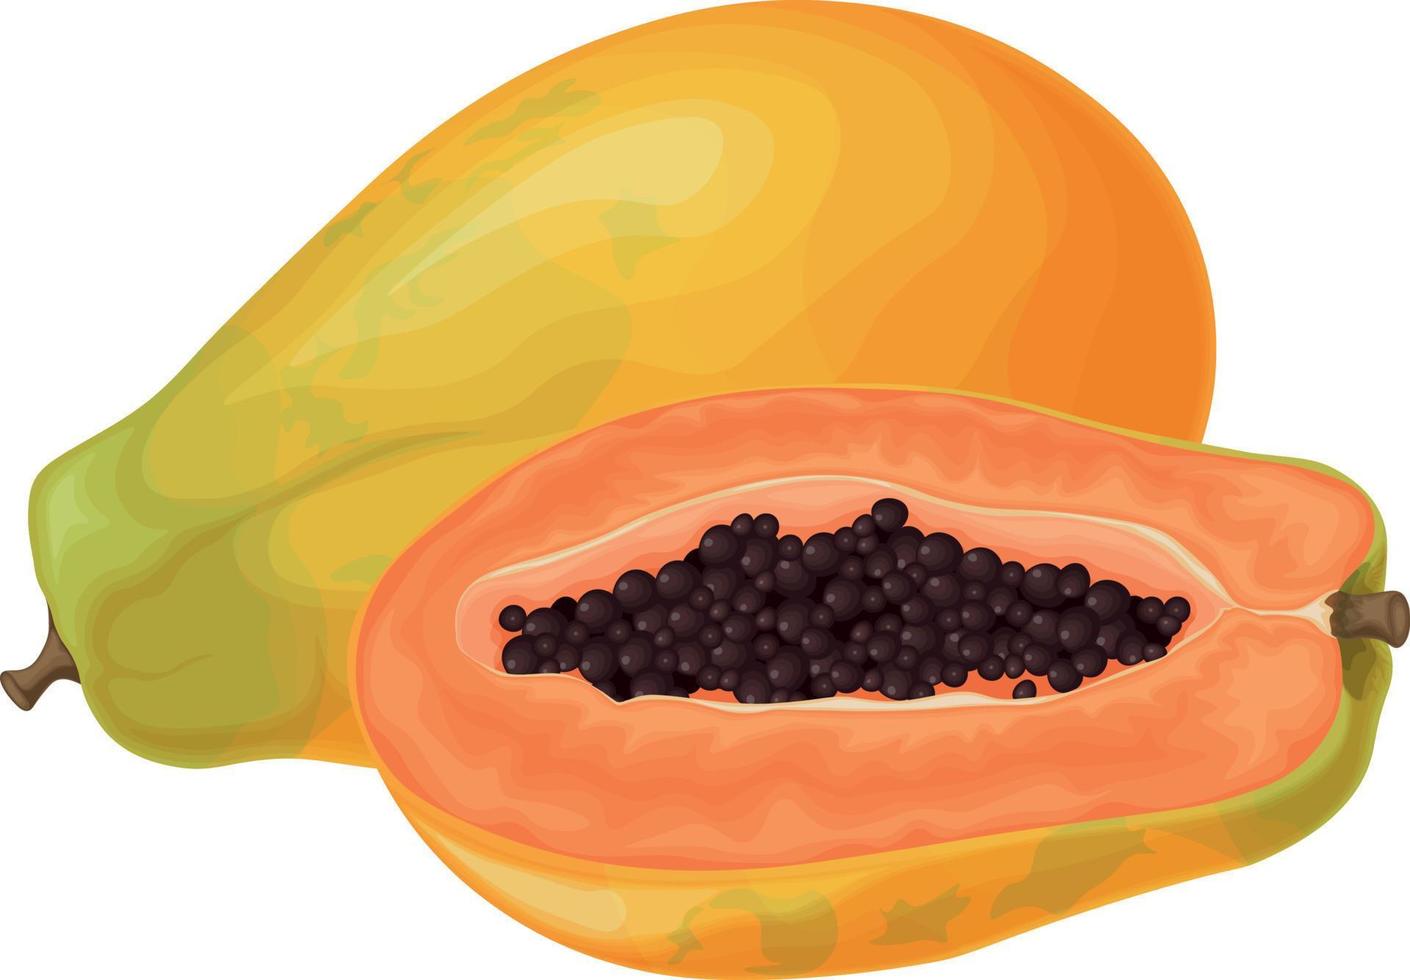 Papaya. Fresh, sweet papaya. Ripe fruit. Exotic fruits. Papaya in the cut. Vector illustration isolated on a white background